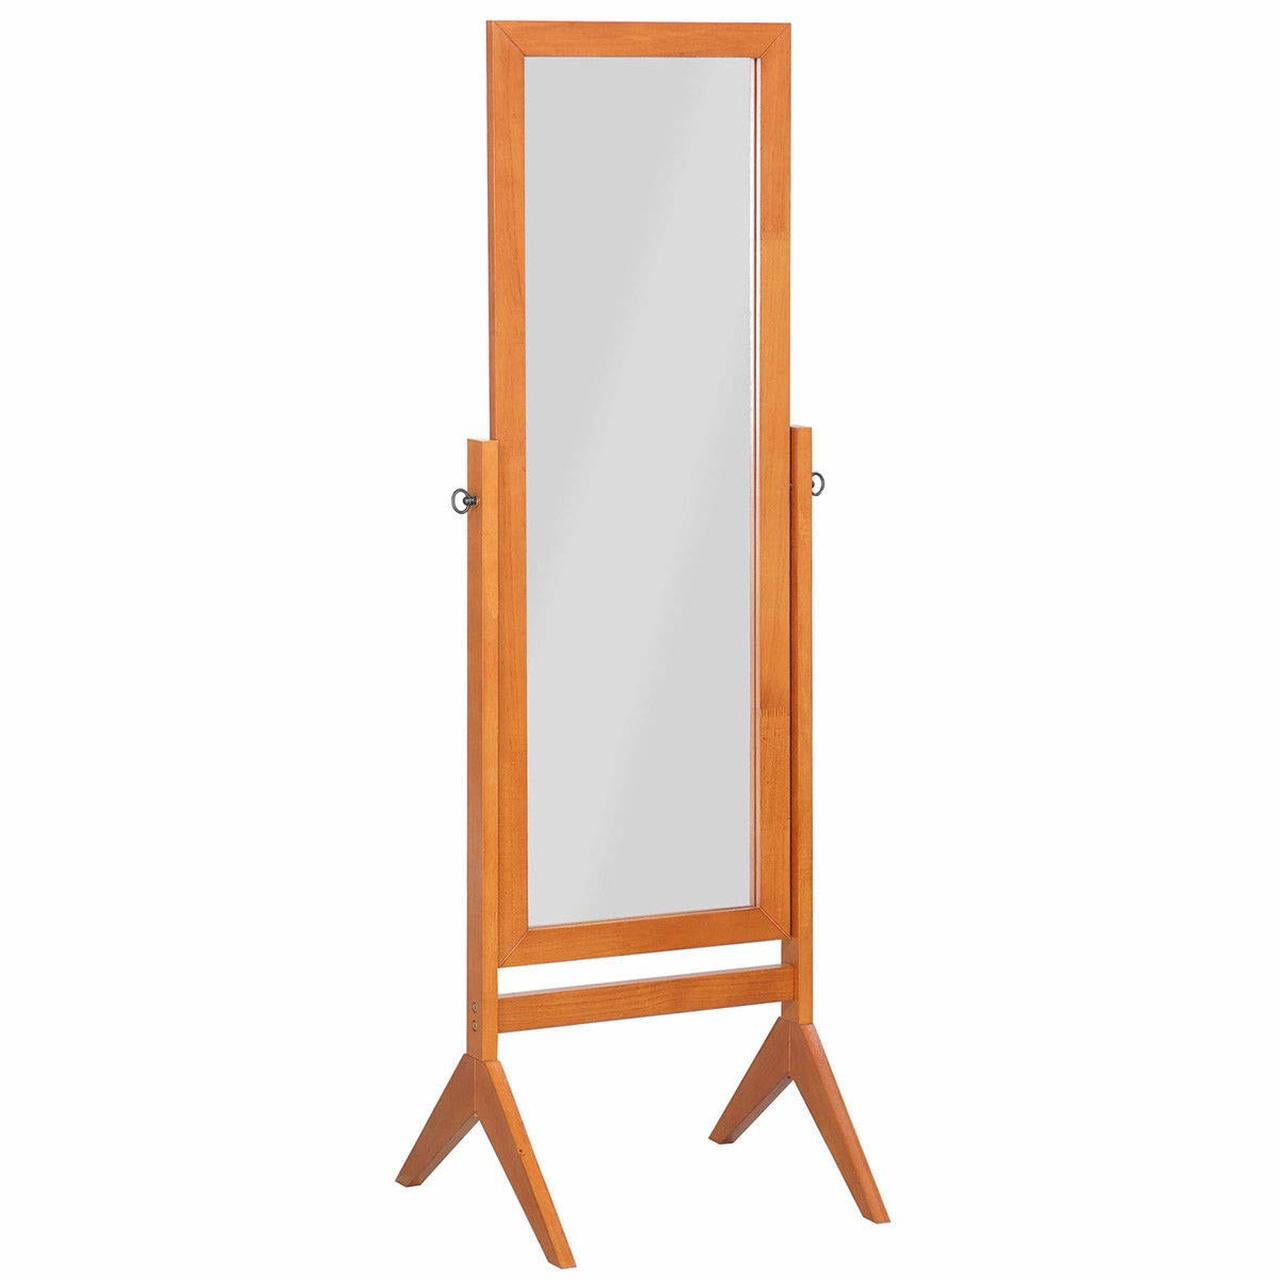 Swivel Full Length Wood Cheval Floor, Swivel Floor Standing Mirror